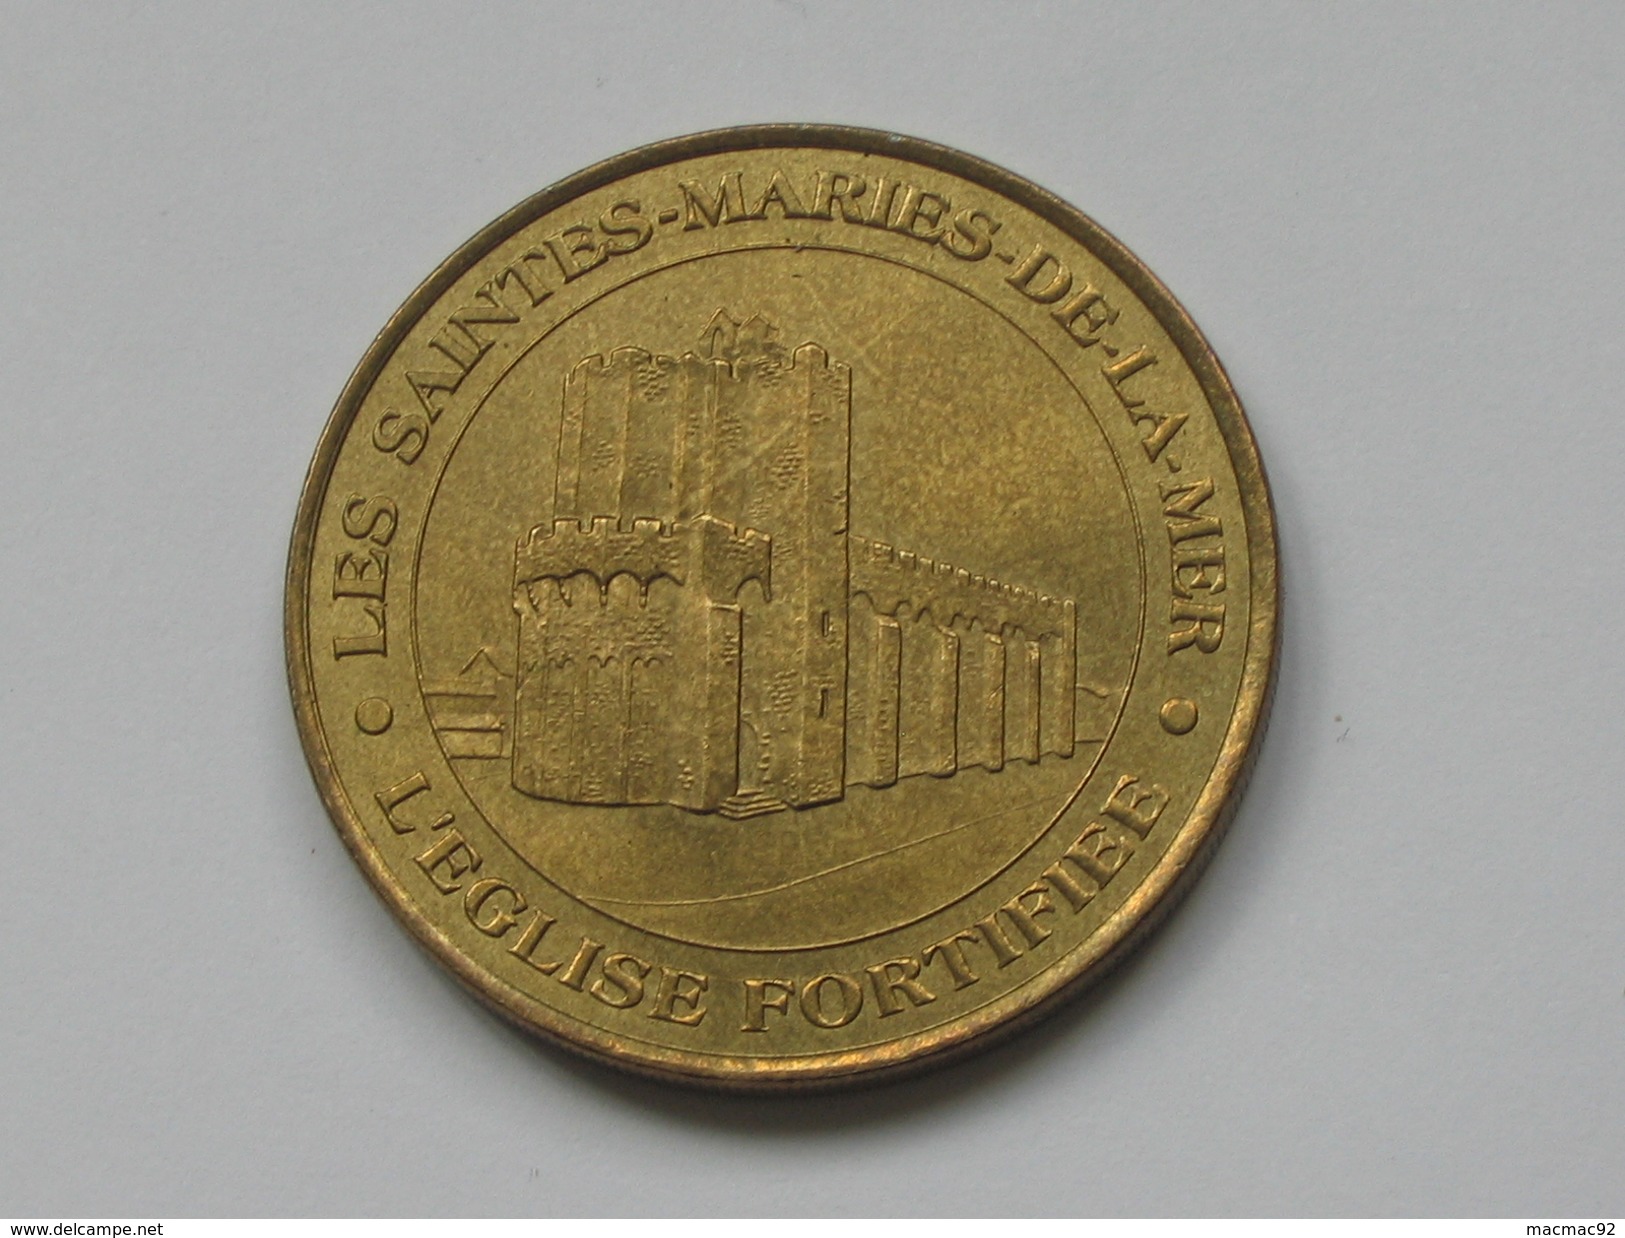 Monnaie De Paris 2003 - CHATEAU ROYAL DE BLOIS   **** EN ACHAT IMMEDIAT  **** - 2003